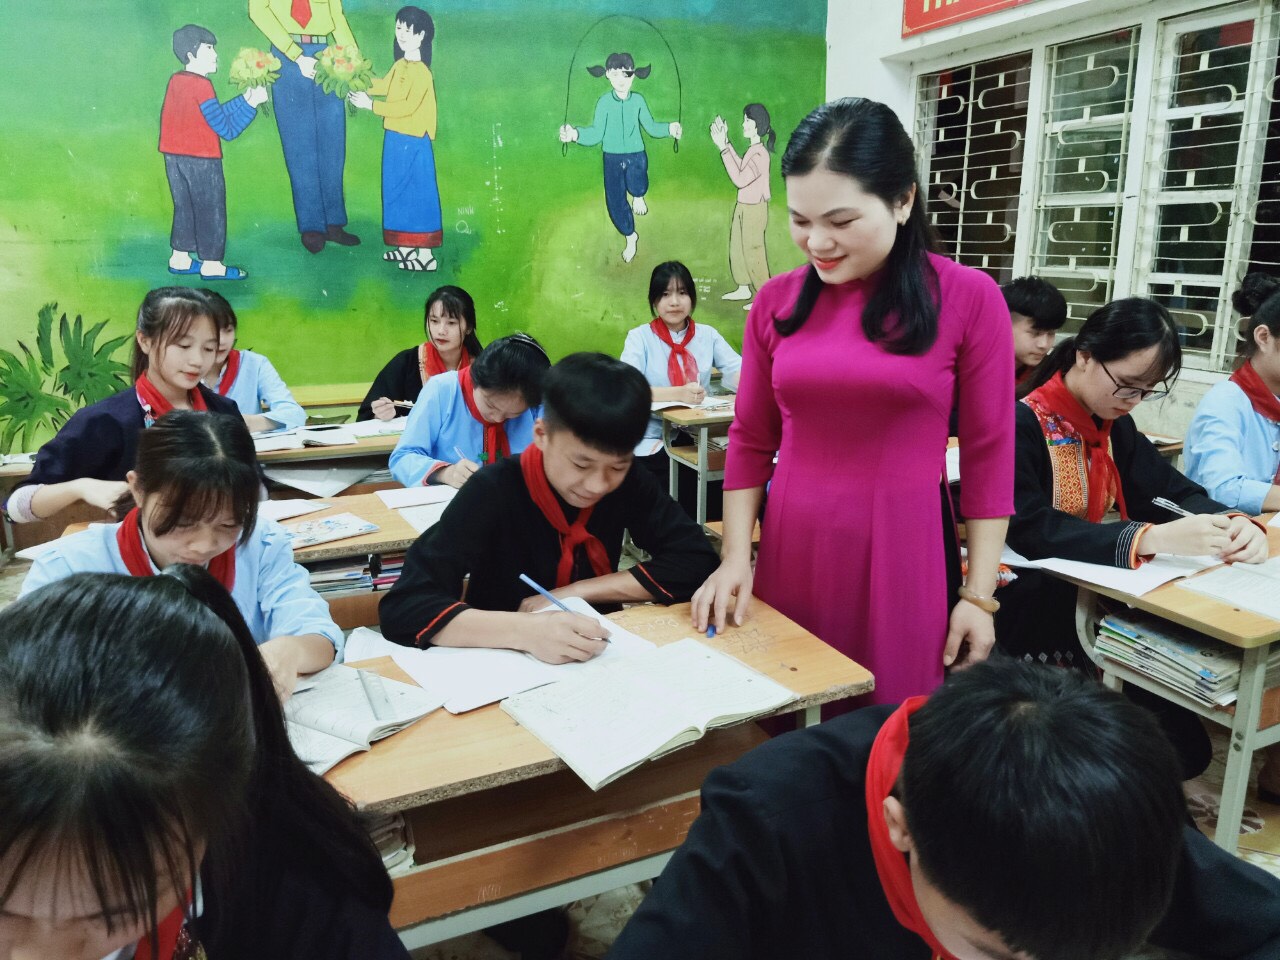 Cô giáo Nguyễn Sinh Khoa khi còn dạy tại Trường PTDTNT huyện Ba Chẽ. (Ảnh nhân vật cung cấp)